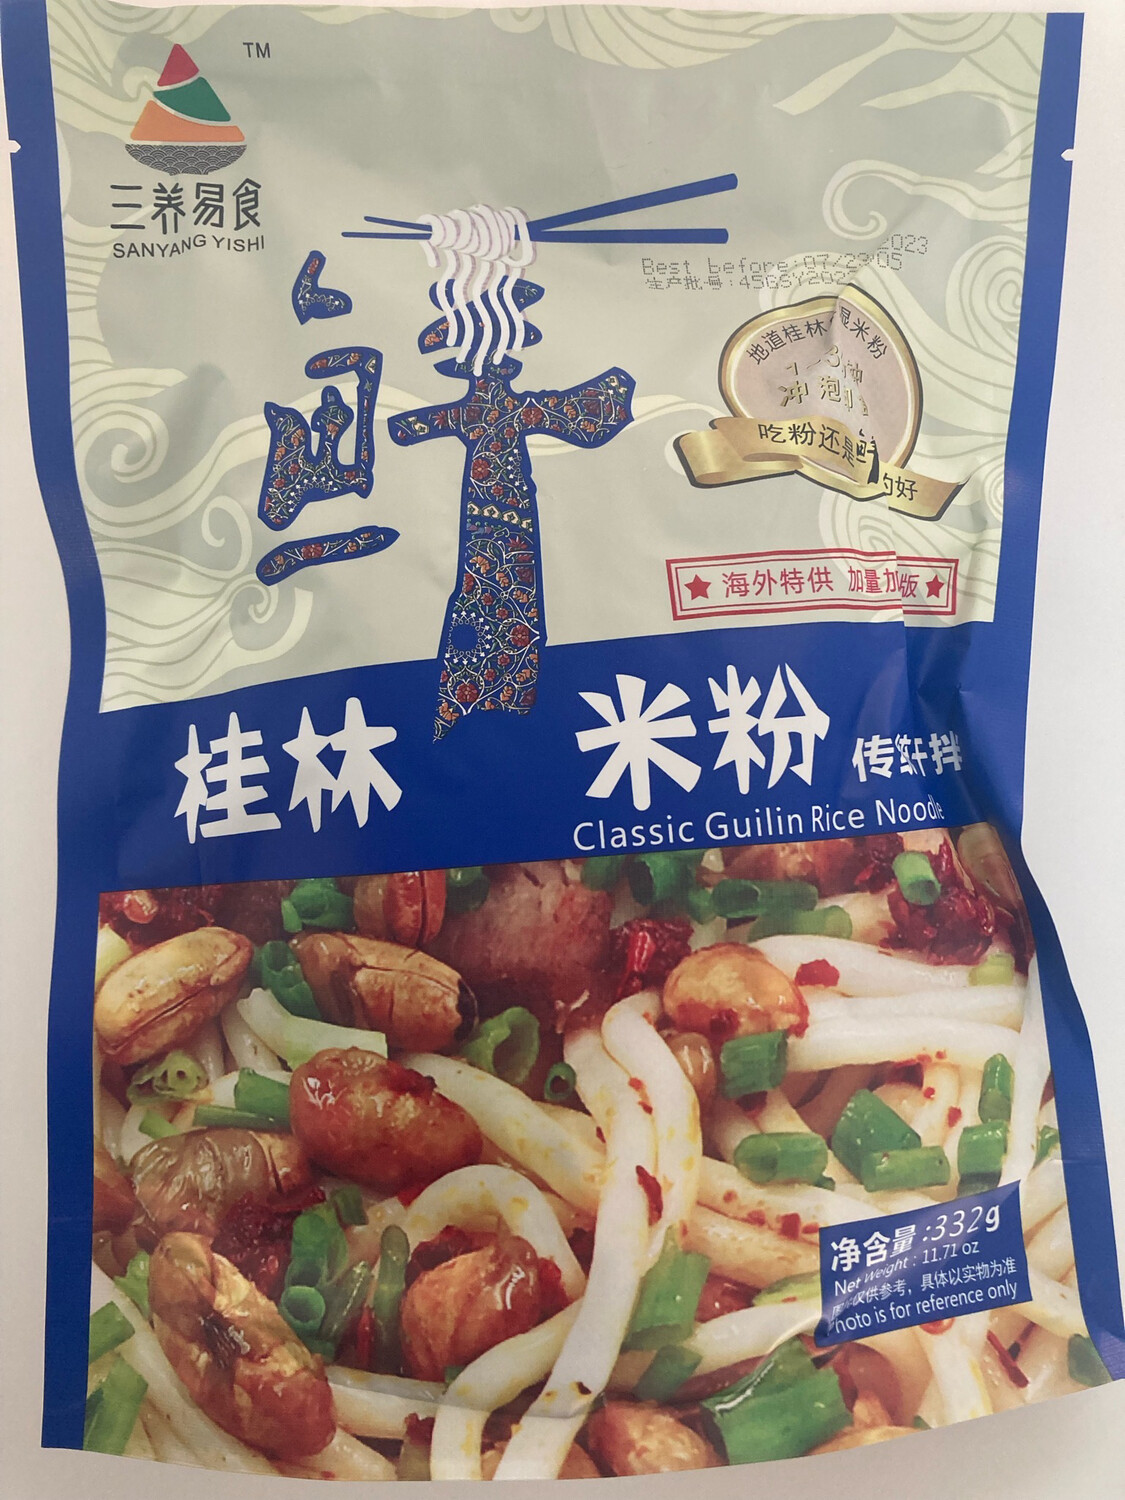 大特价！三养易食 Classic Guilin rice noodle 桂林鲜米粉 332 g 买一送一